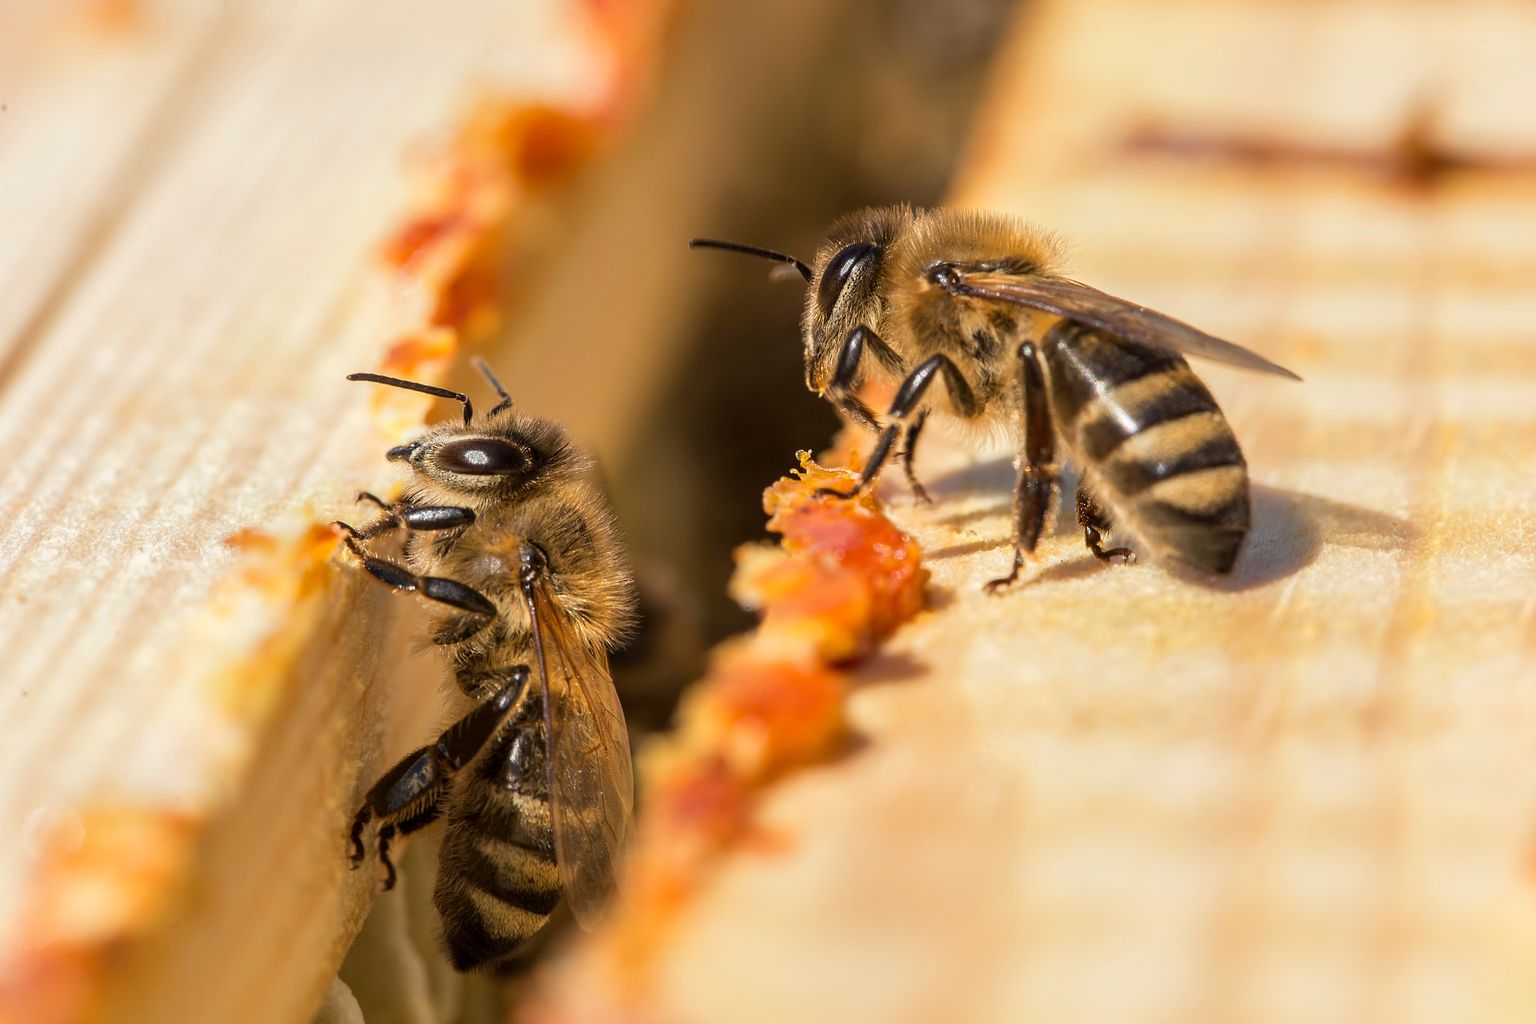 Les abeilles déposent de la propolis dans une ruche. Abeilles à miel travaillant dans la ruche. Gros plan du corps de ruche ouvert avec les cadres. Les abeilles sont enduites de propolis dans la ruche. Abeilles travaillant avec la propolis.